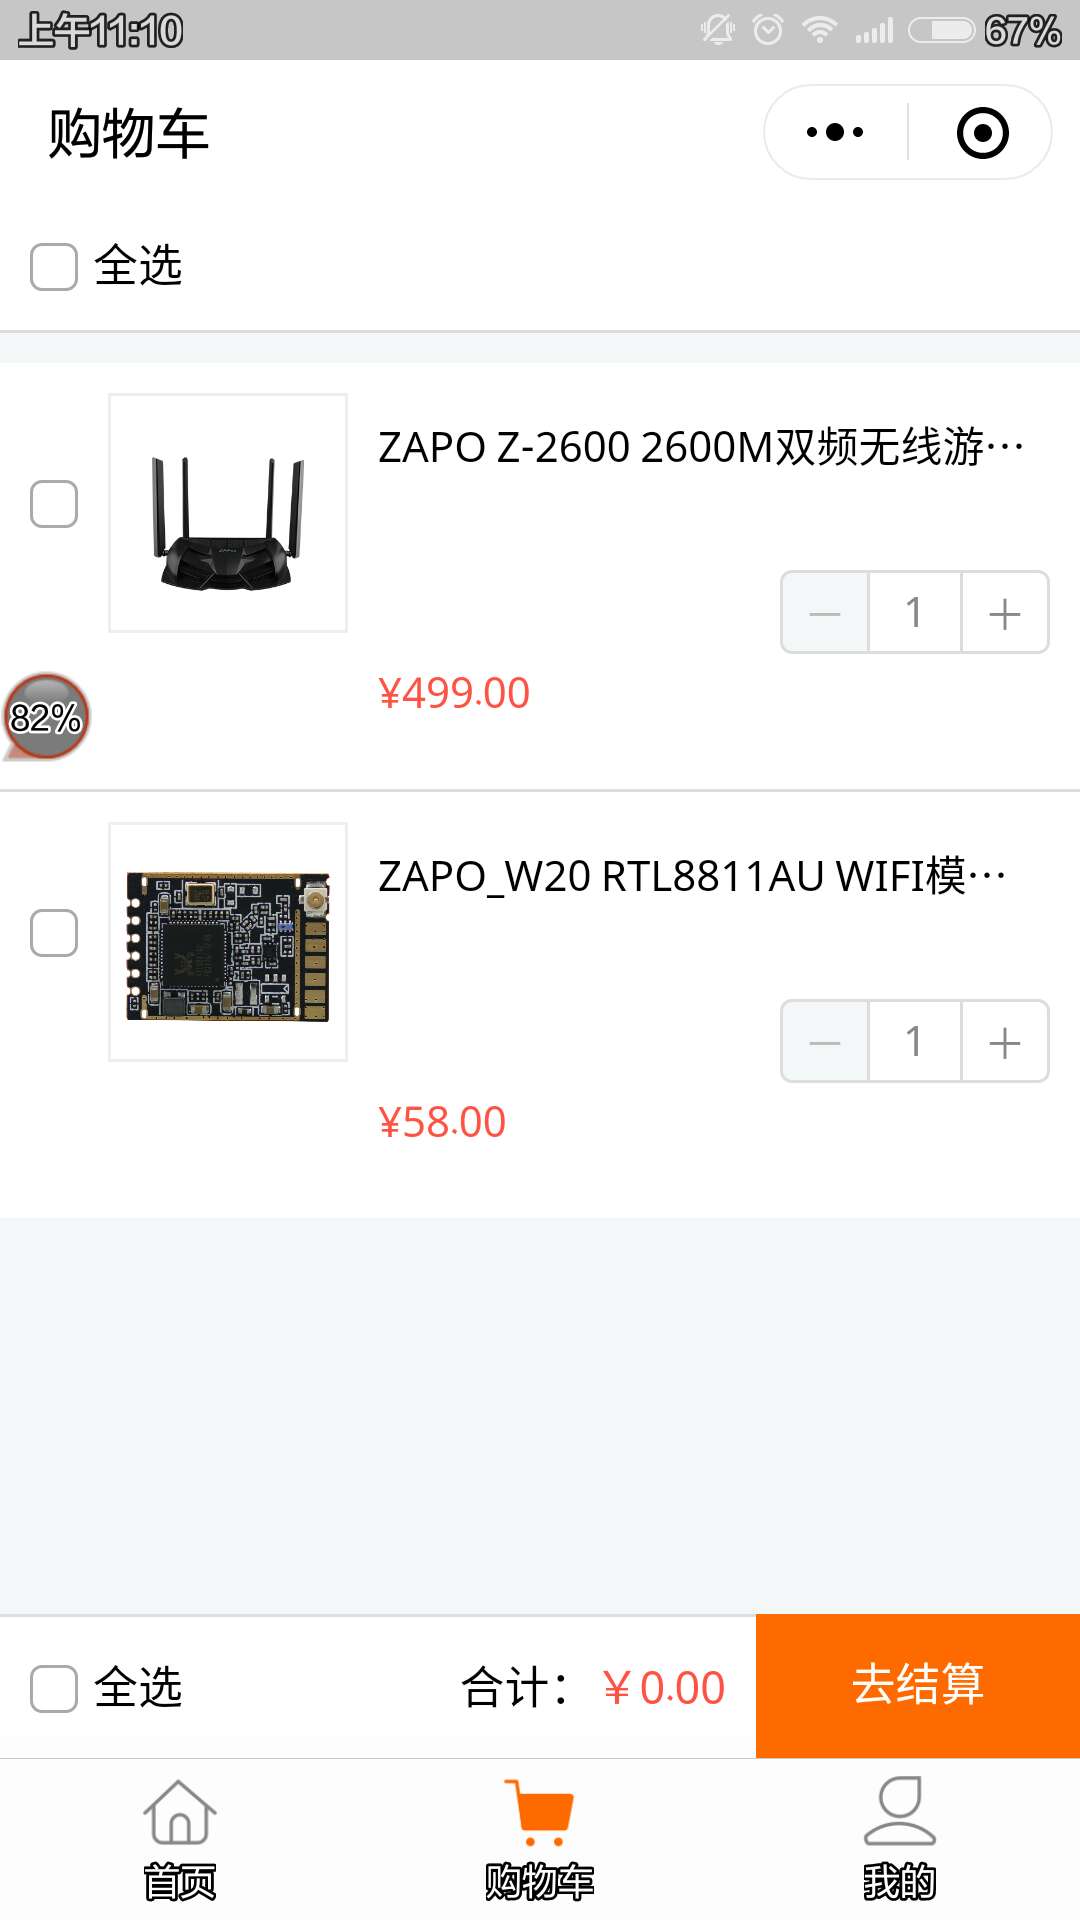 ZAPO品牌无线路由器